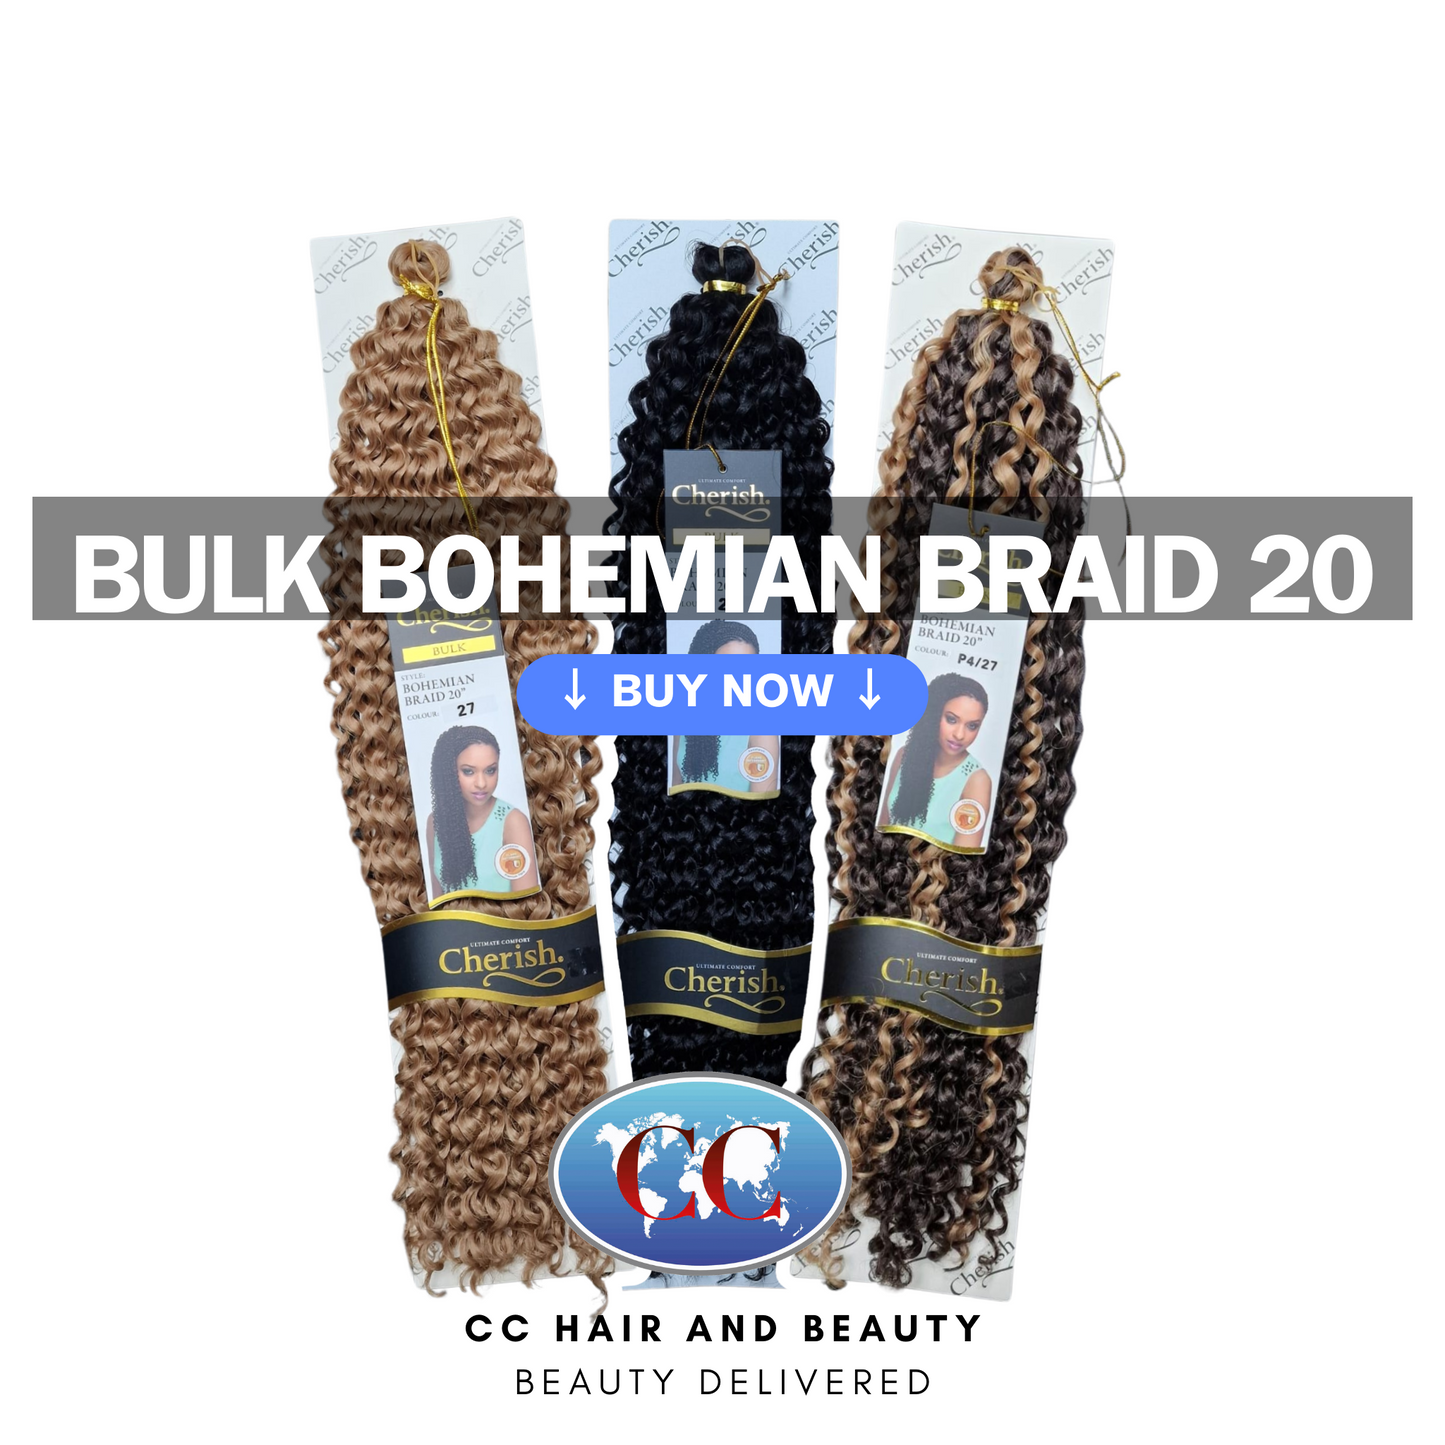 Cherish Bohemian Braid 20"